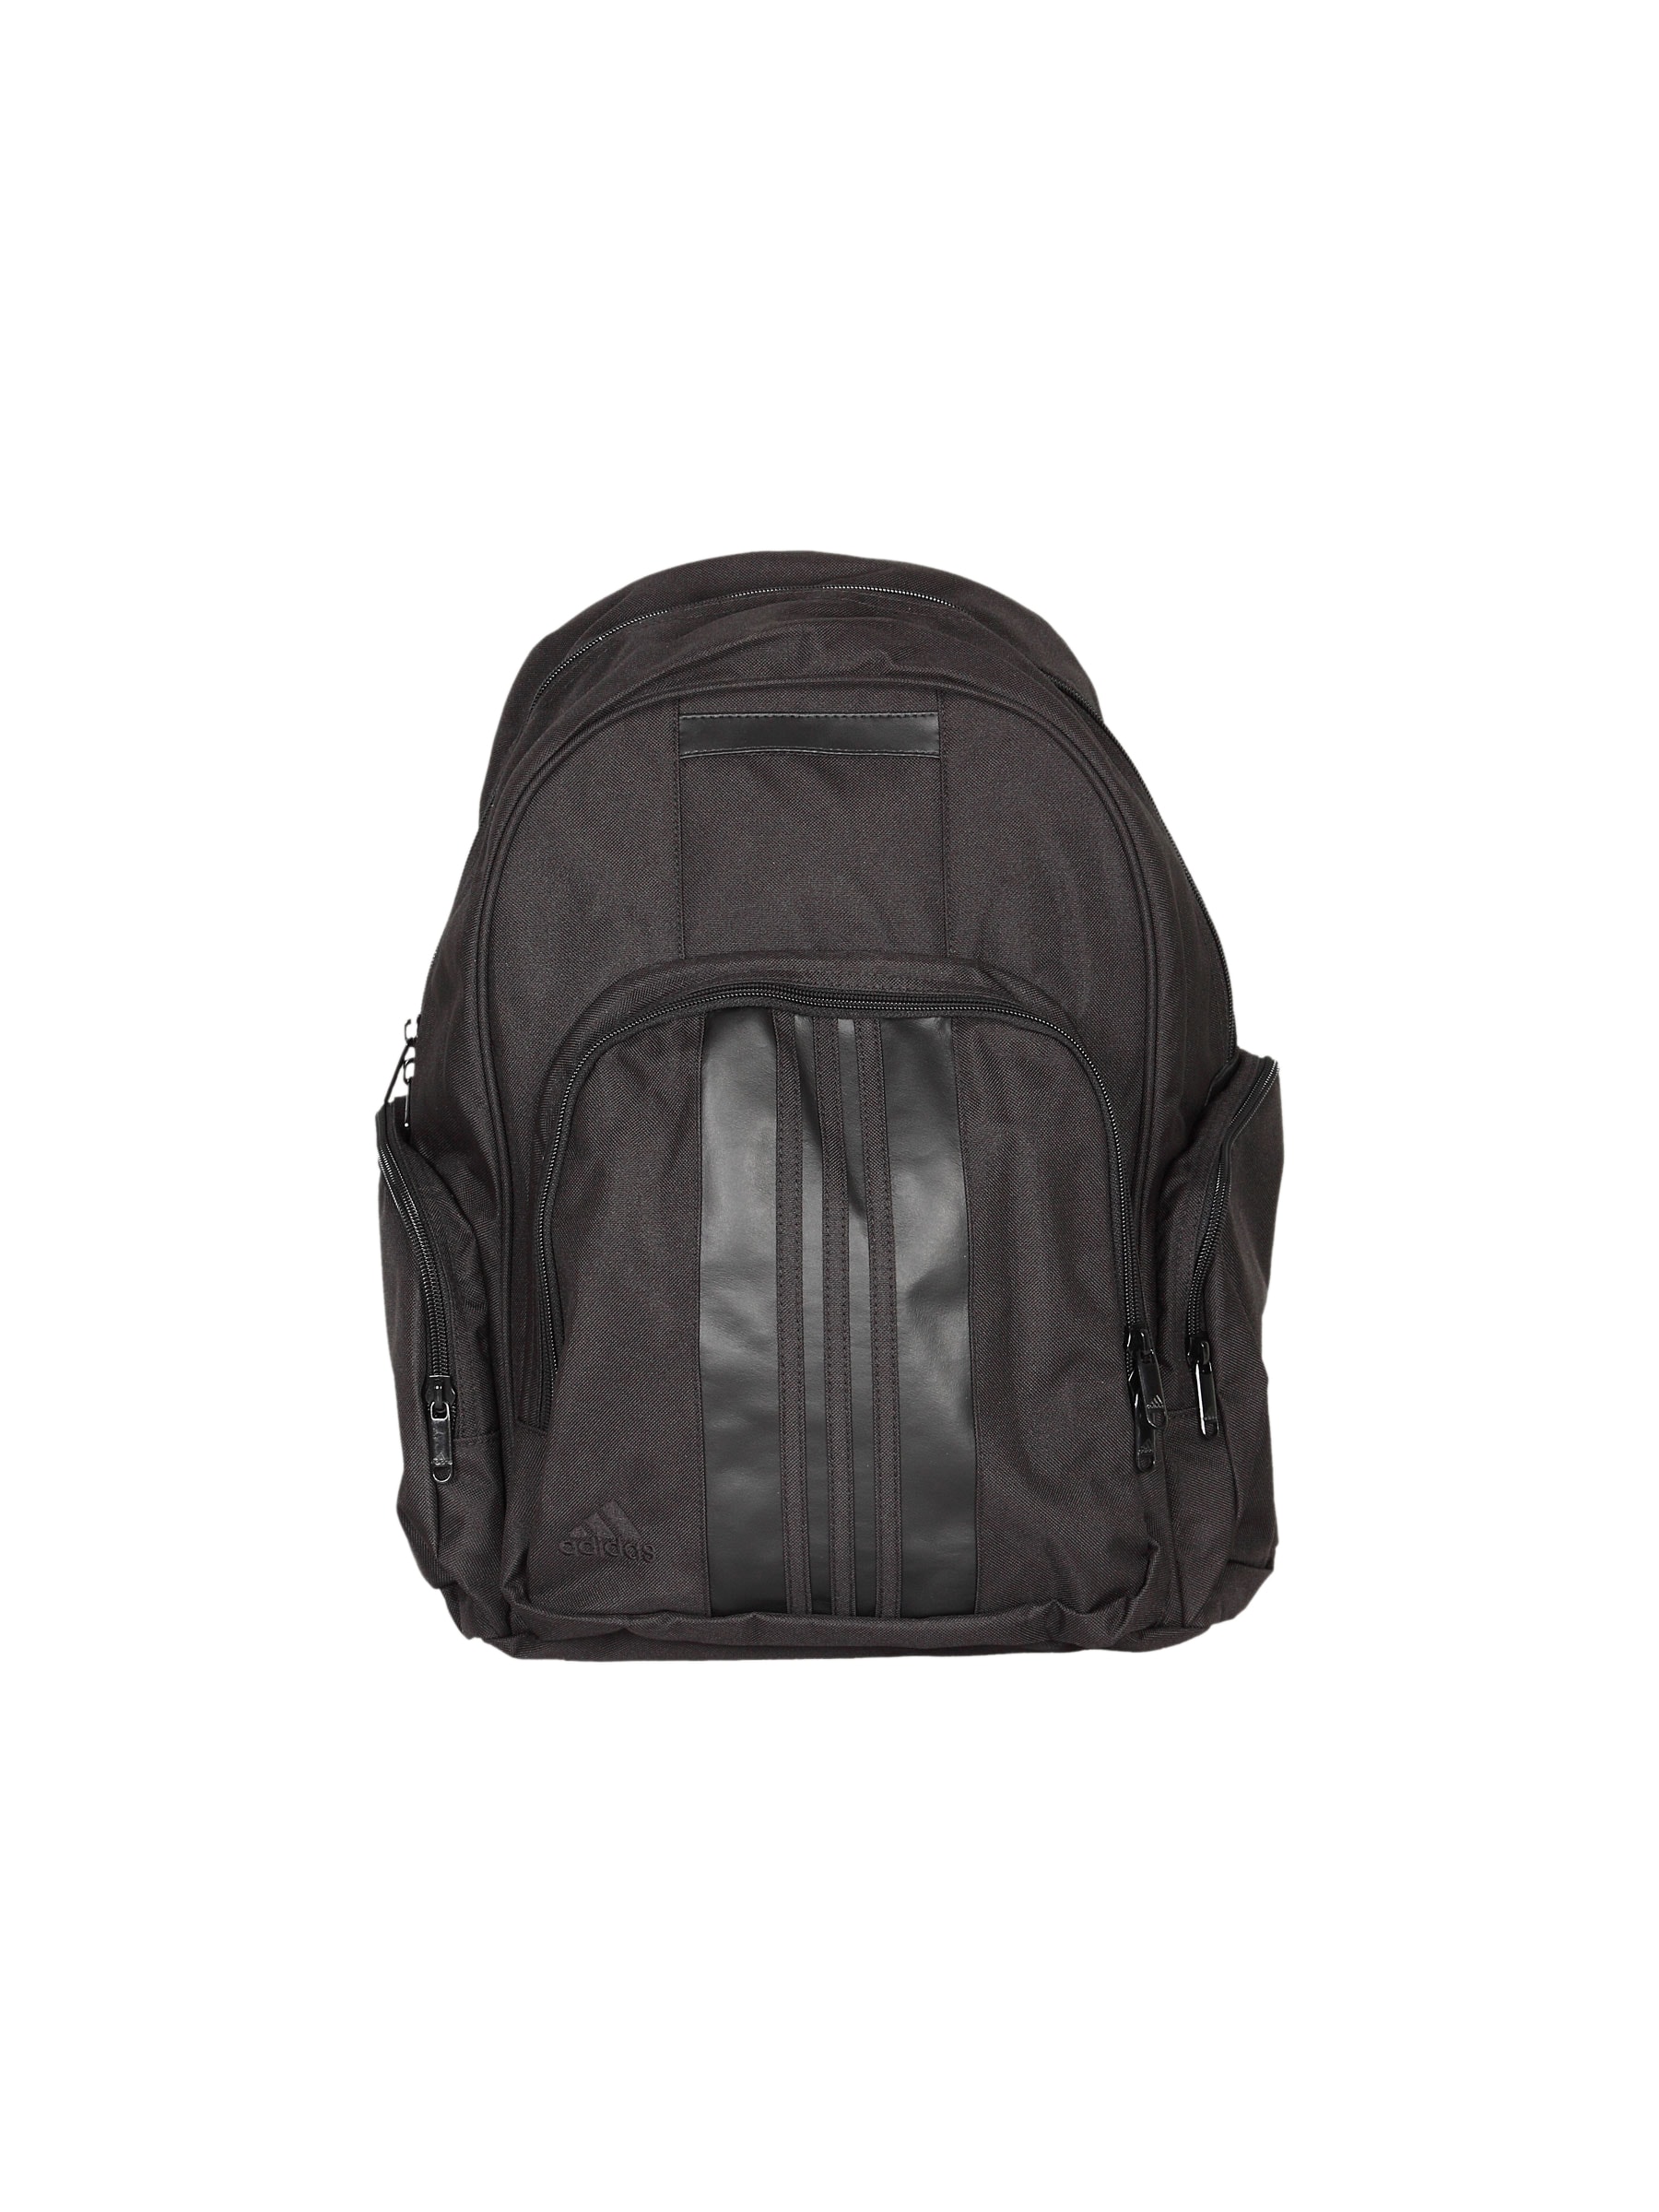 ADIDAS 3S Black Unisex Backpack